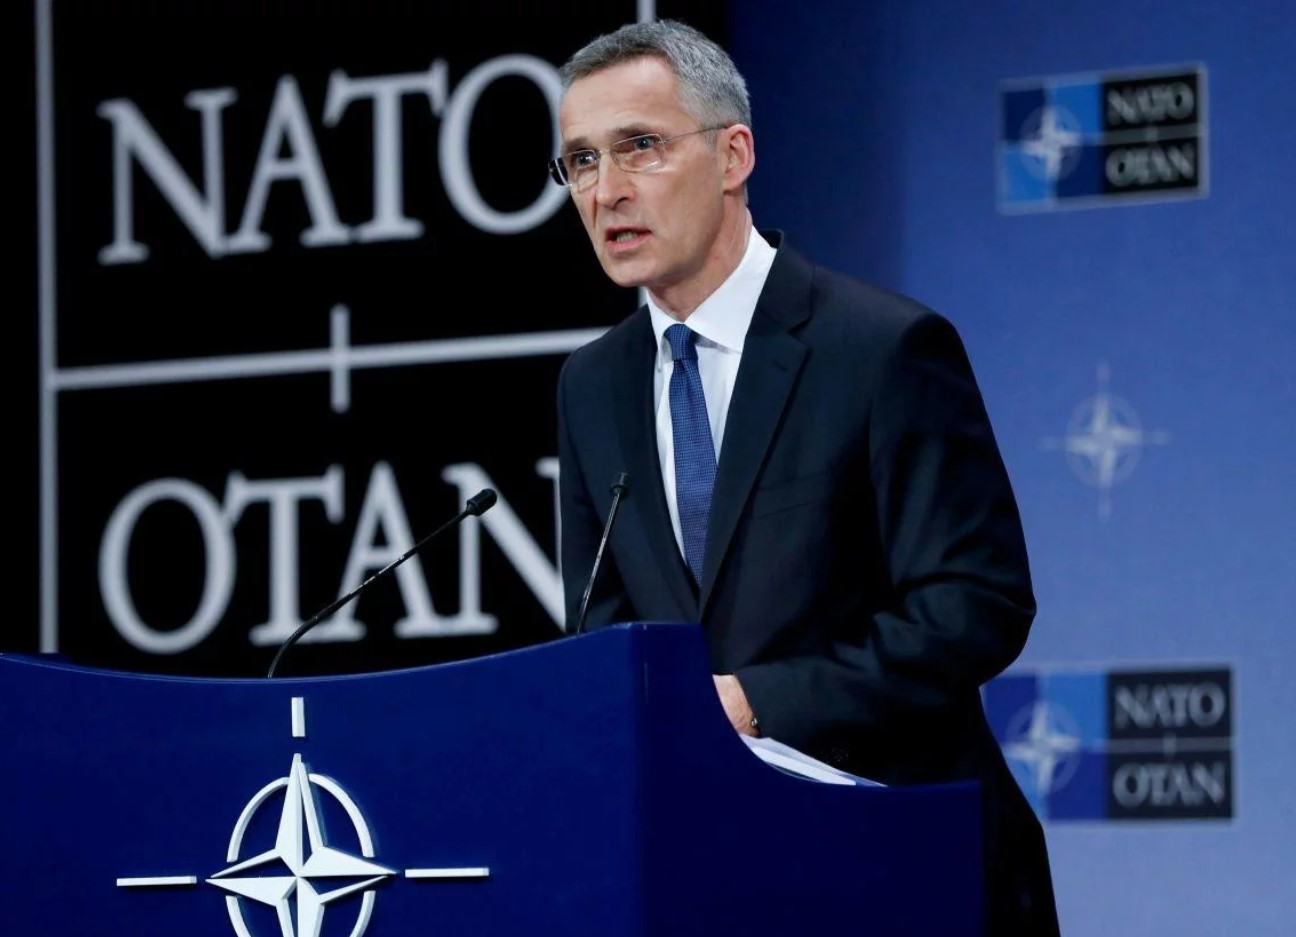 Столтенберг: Украина будет членом НАТО